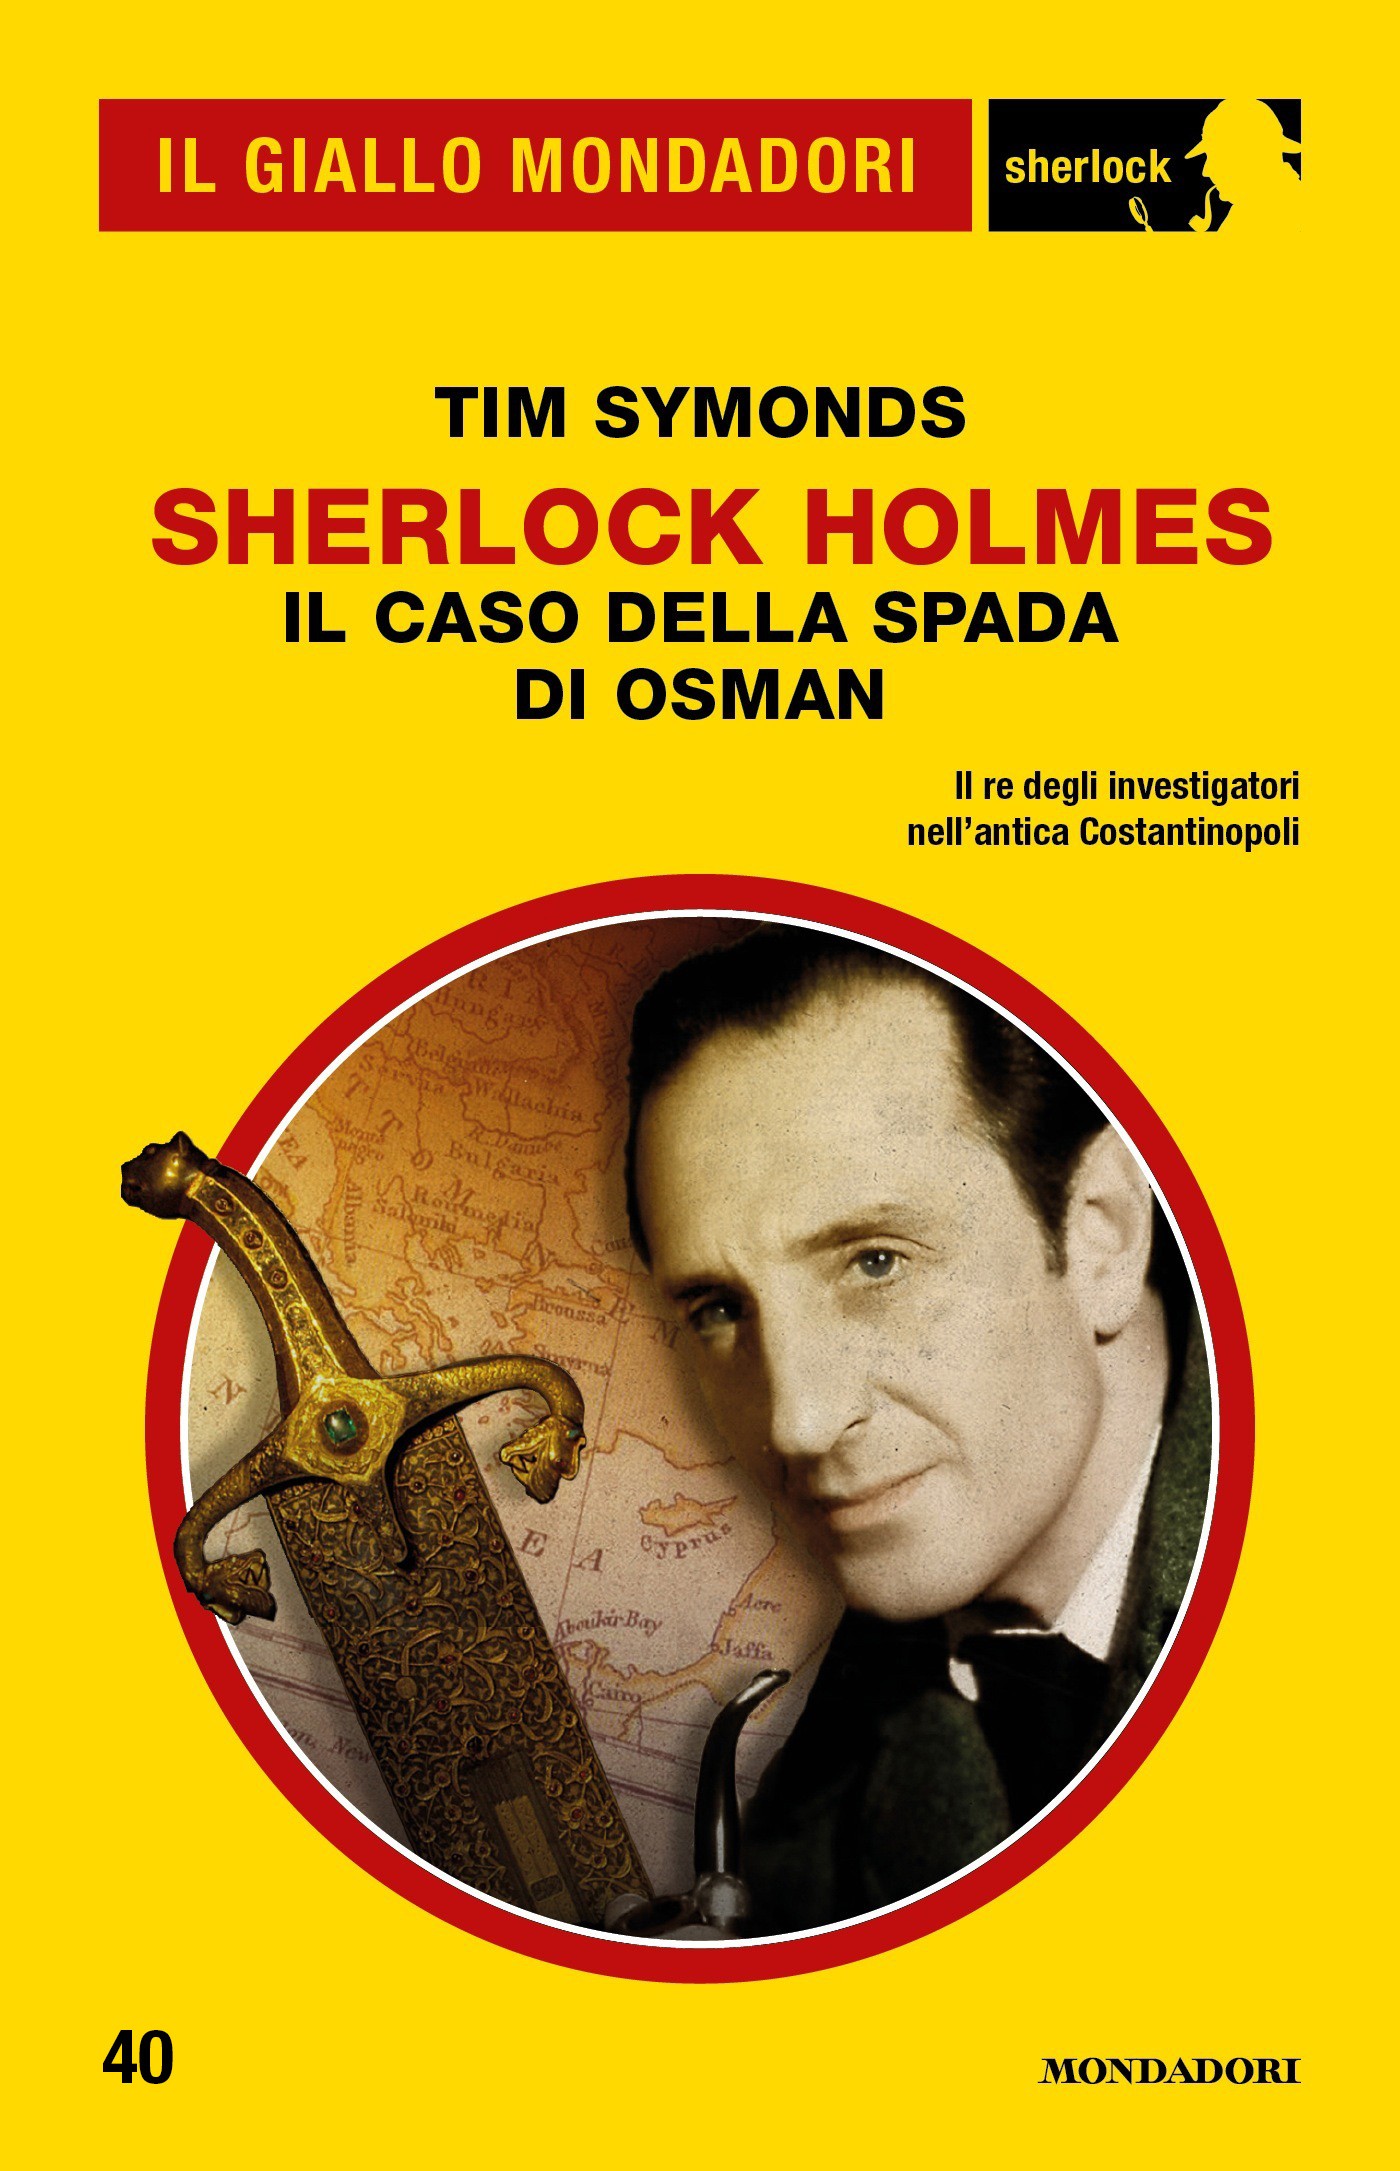 Sherlock Holmes - Il caso della Spada di Osman (Il Giallo Mondadori Sherlock) - Librerie.coop